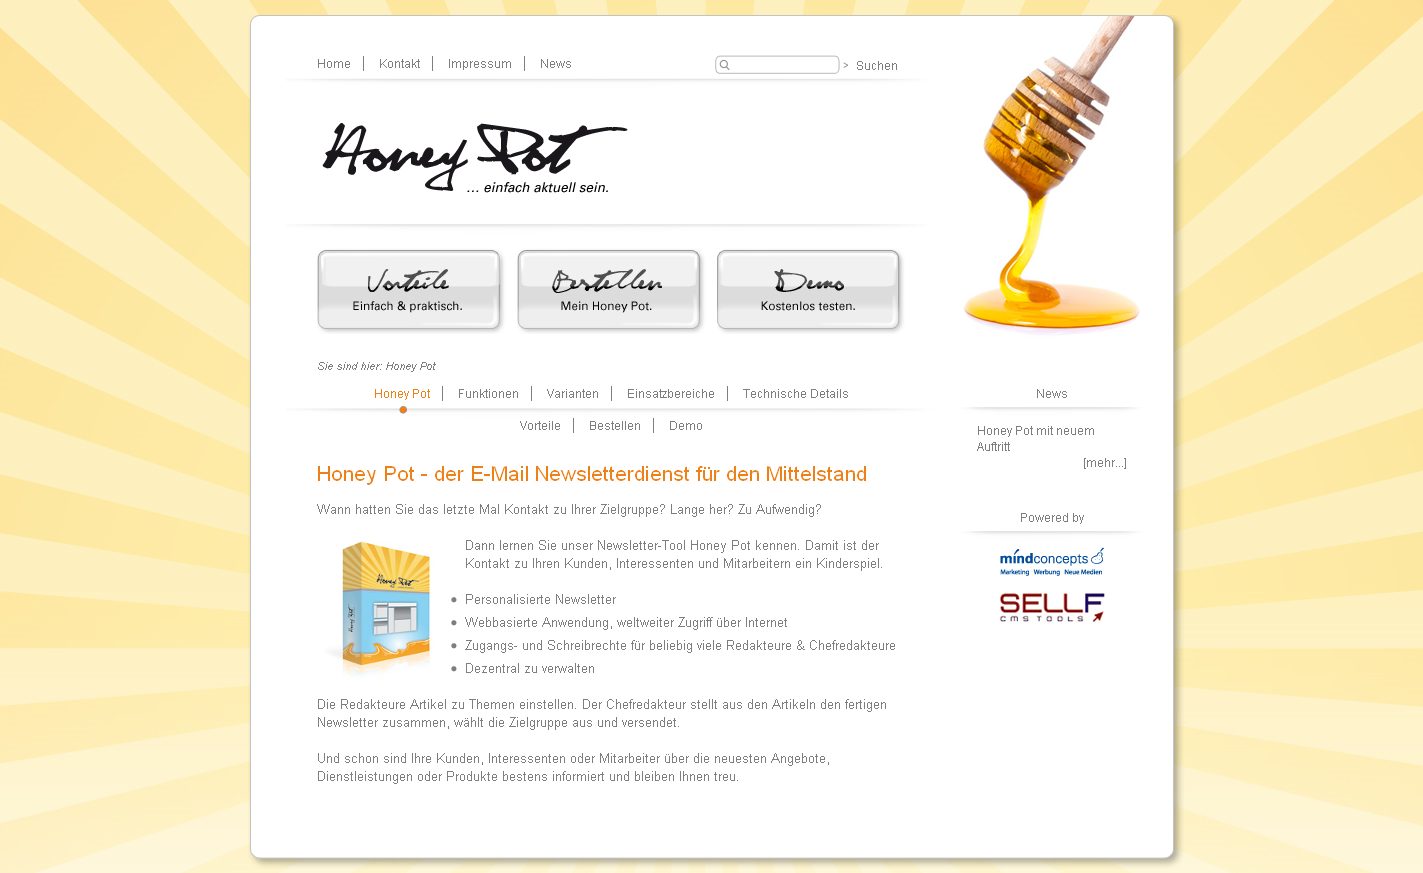 Honey Pot (mindconcepts)